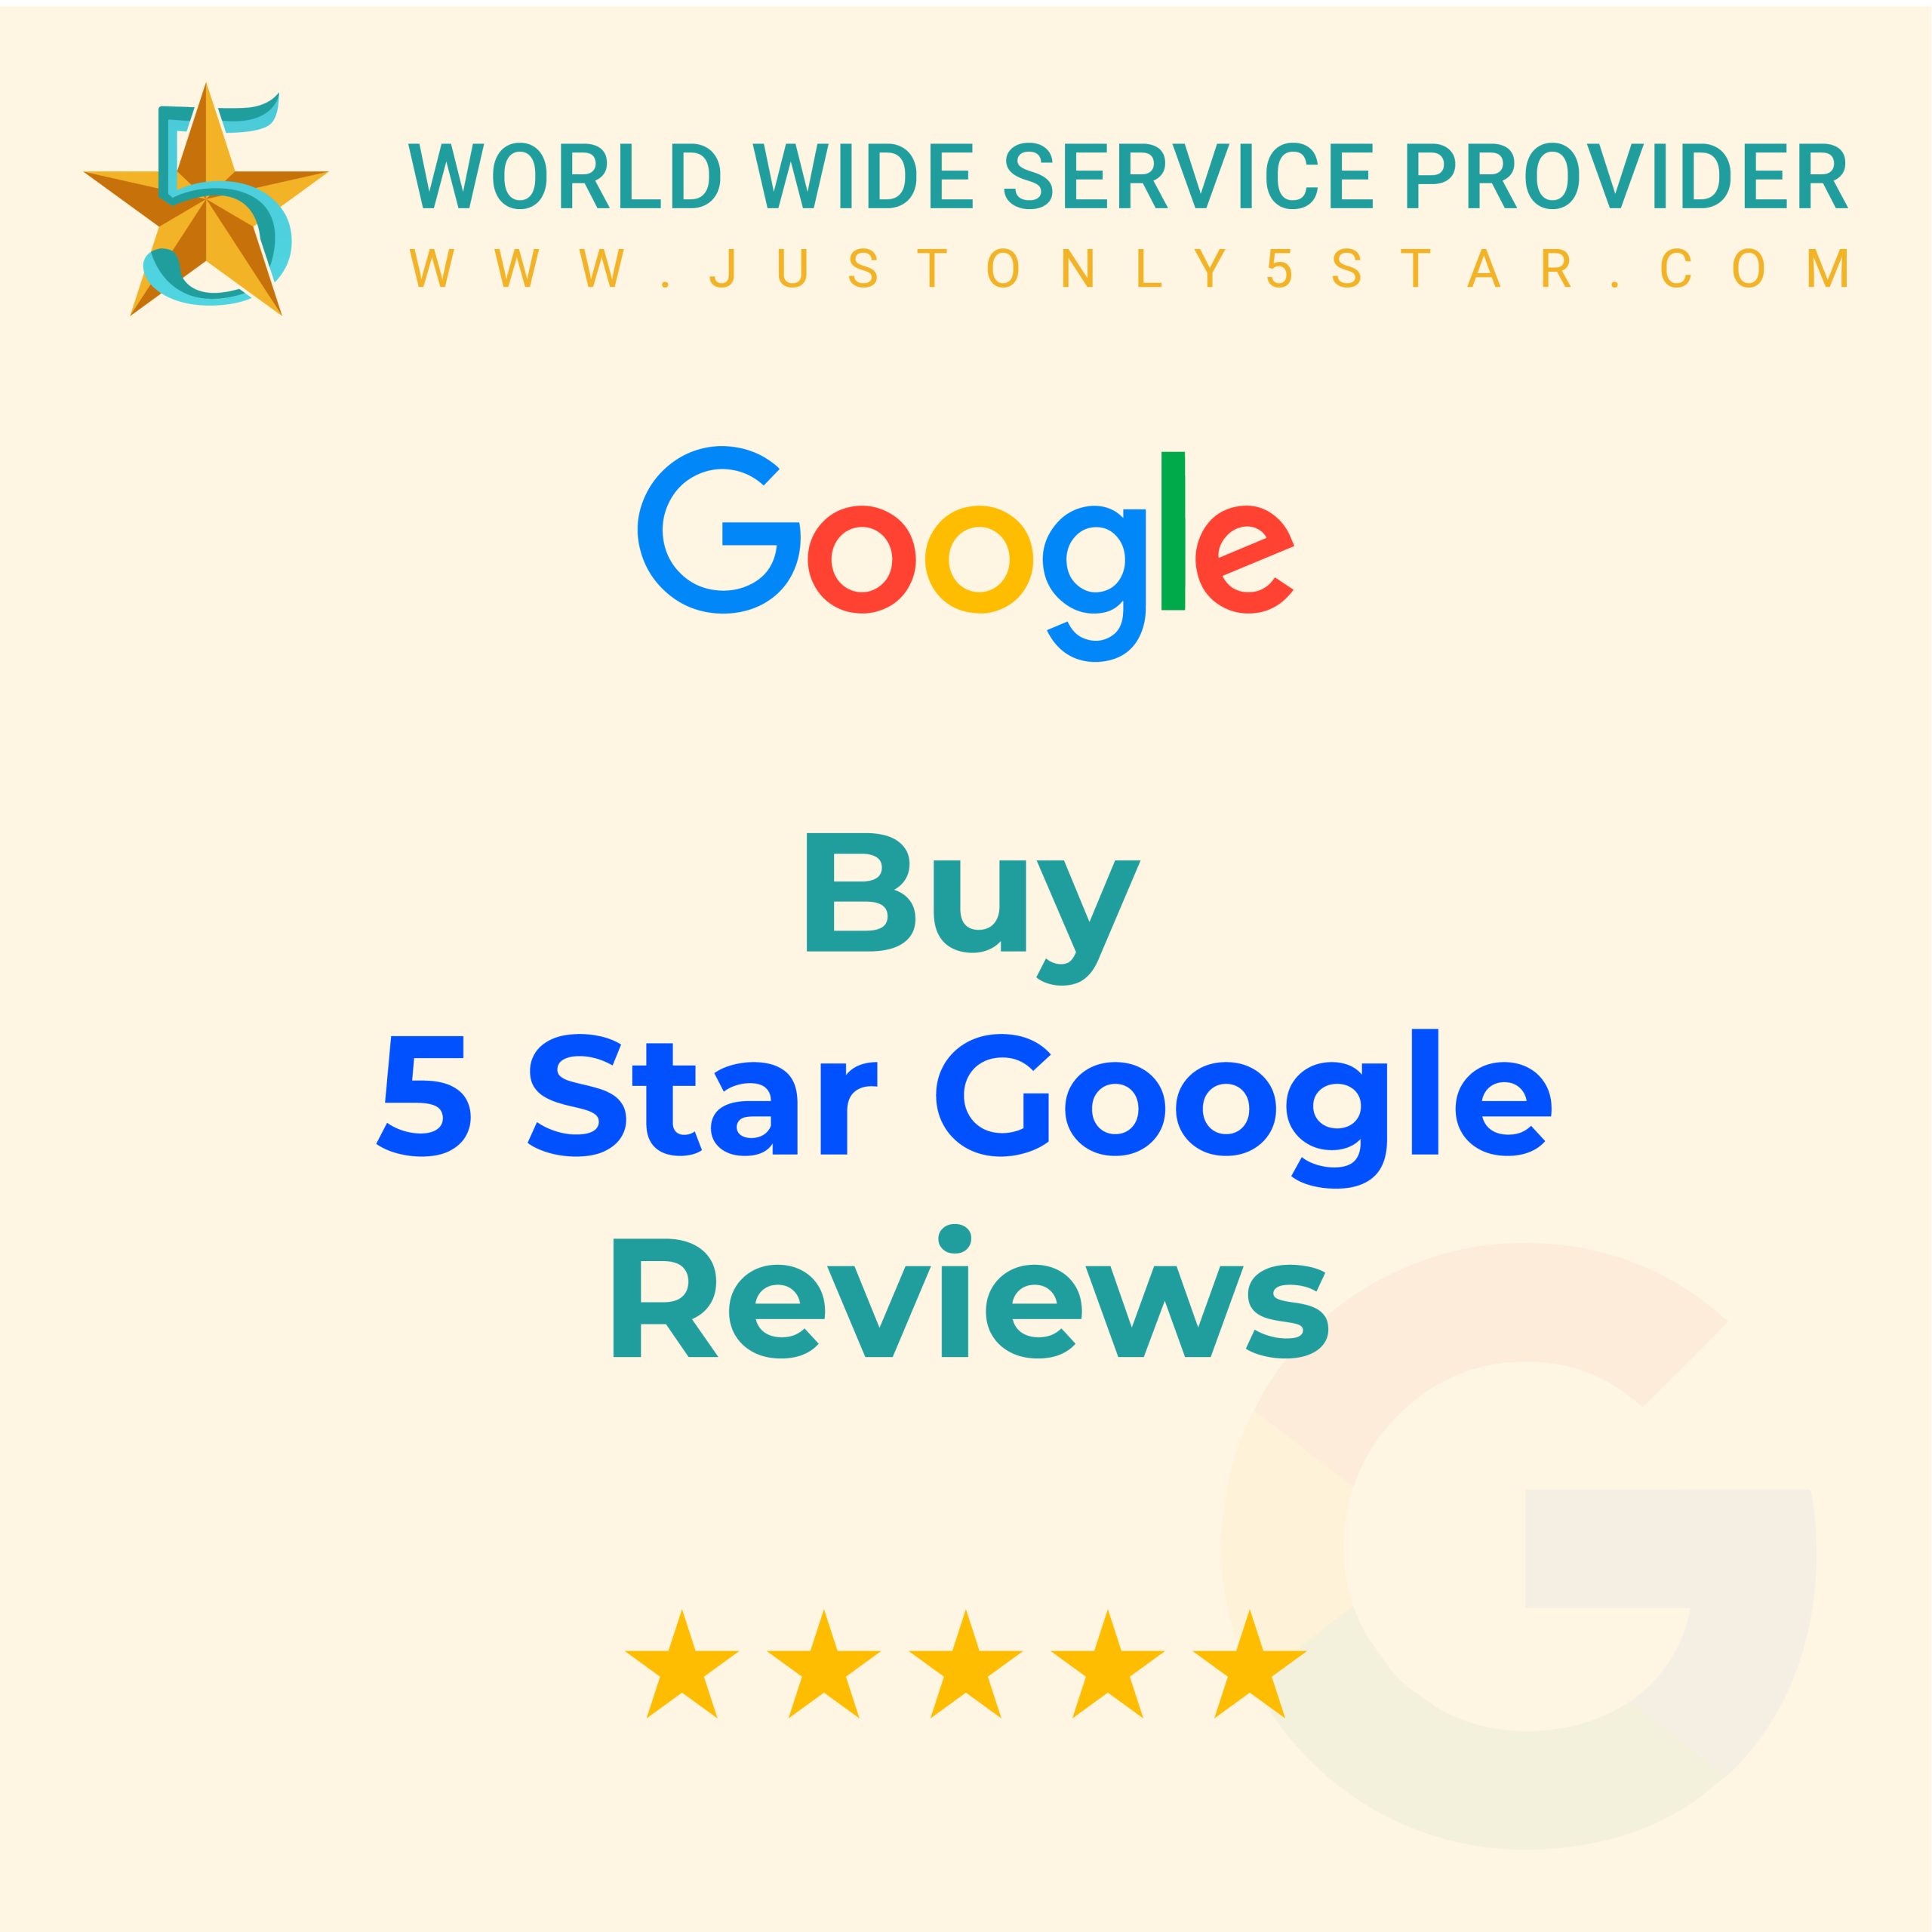 Buy Google 5 Star Reviews - 100% Real & Safe Reviews...